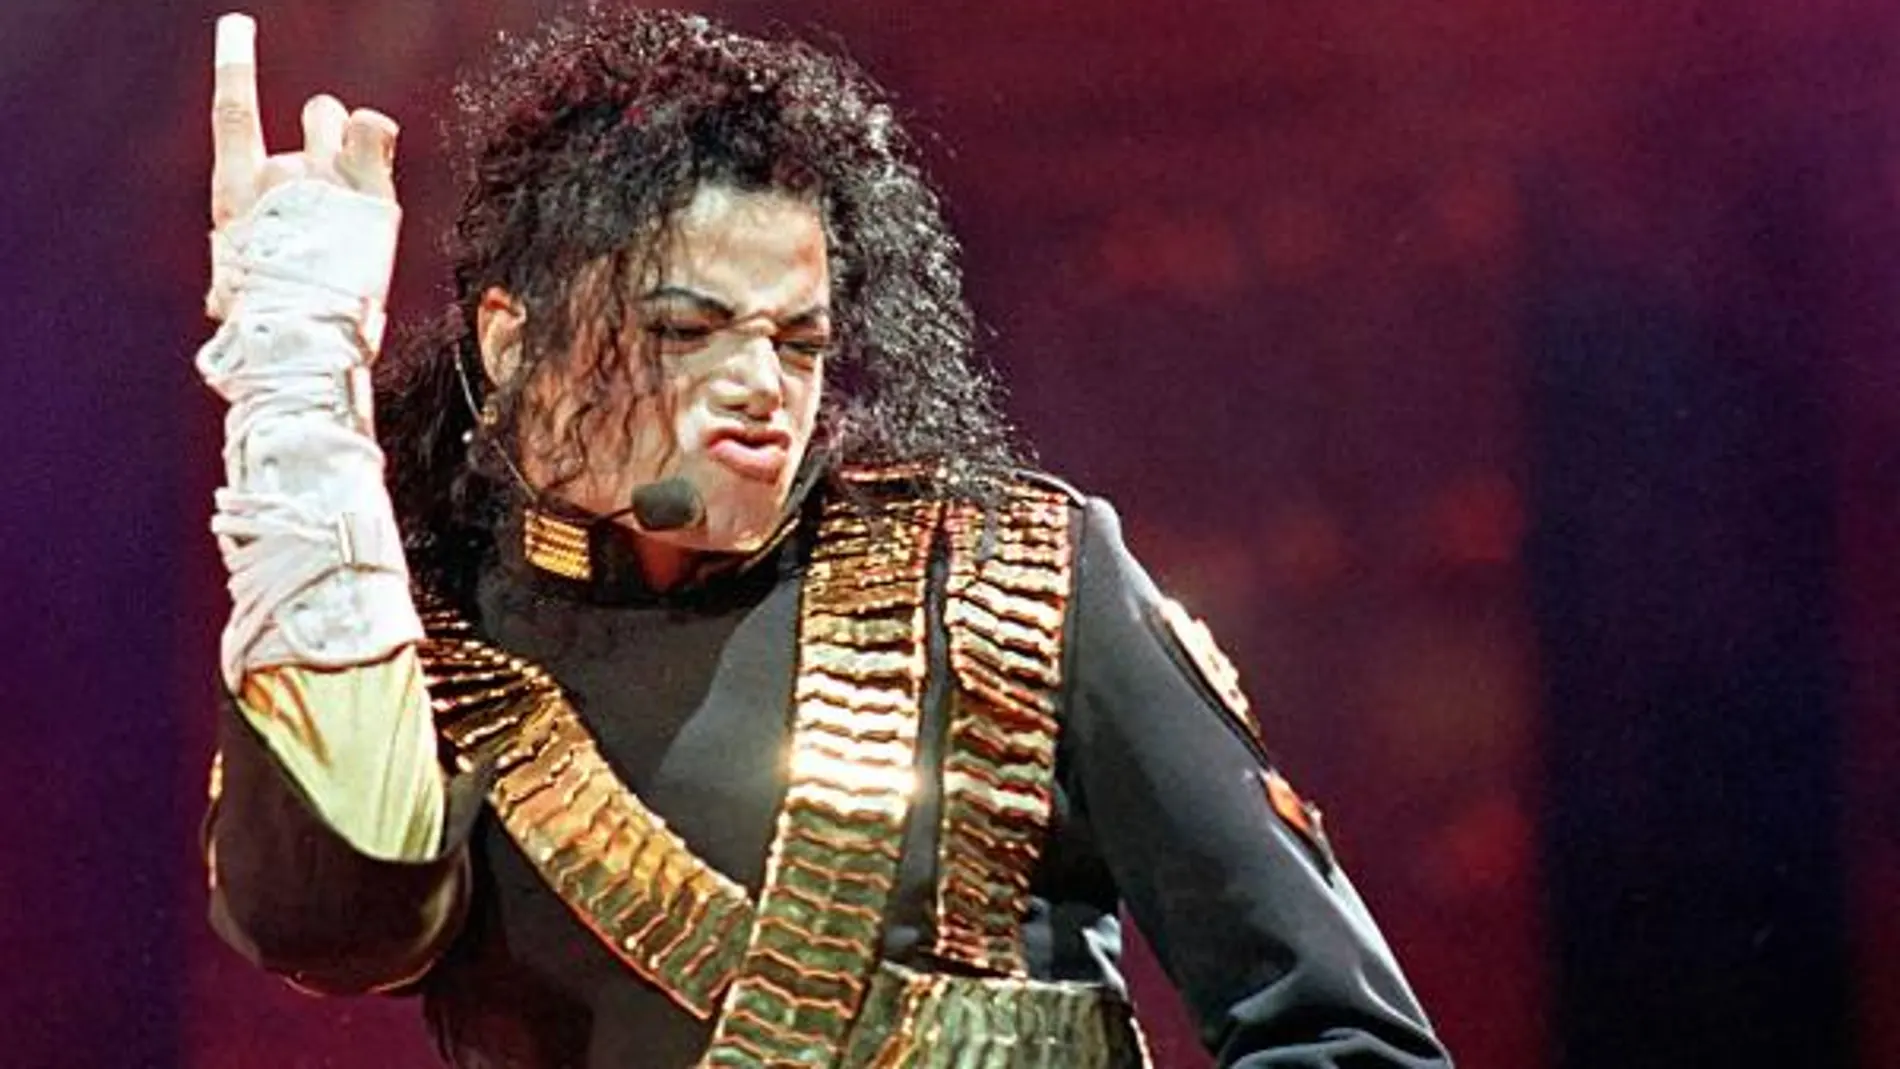 El rey del pop, Michael Jackson